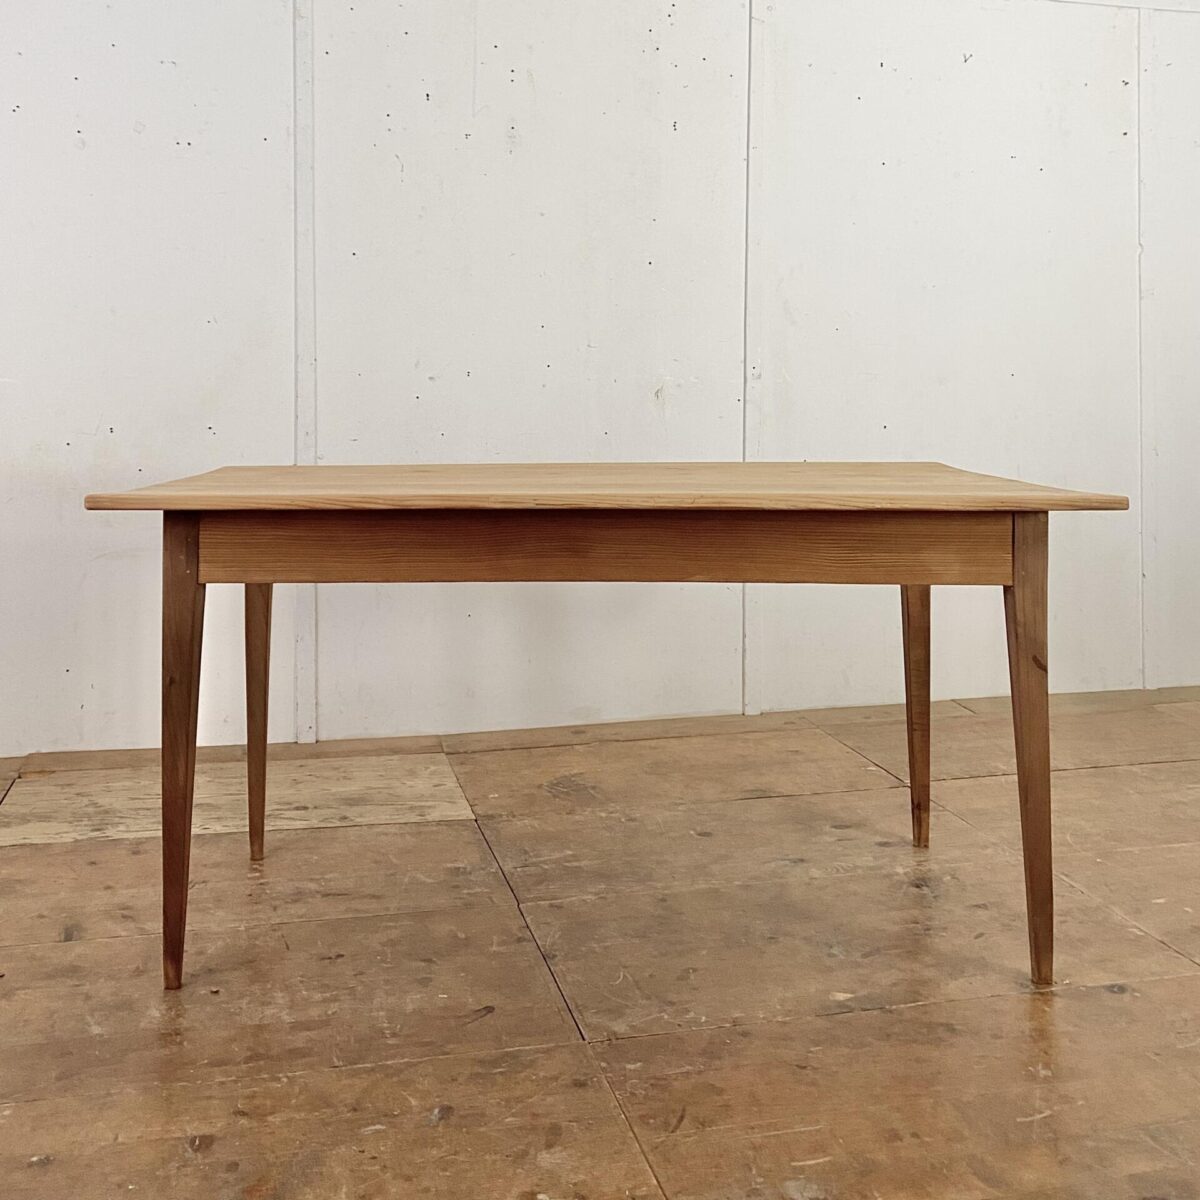 Deuxieme.shop Biedermeiertisch aus Tanne. 150x88cm Höhe 75.5cm. Der Tisch ist in stabilem überarbeiteten Zustand, die Holz Oberflächen sind geschliffen und mit Naturöl behandelt. An dem Tisch finden 4-6 Personen Platz. 